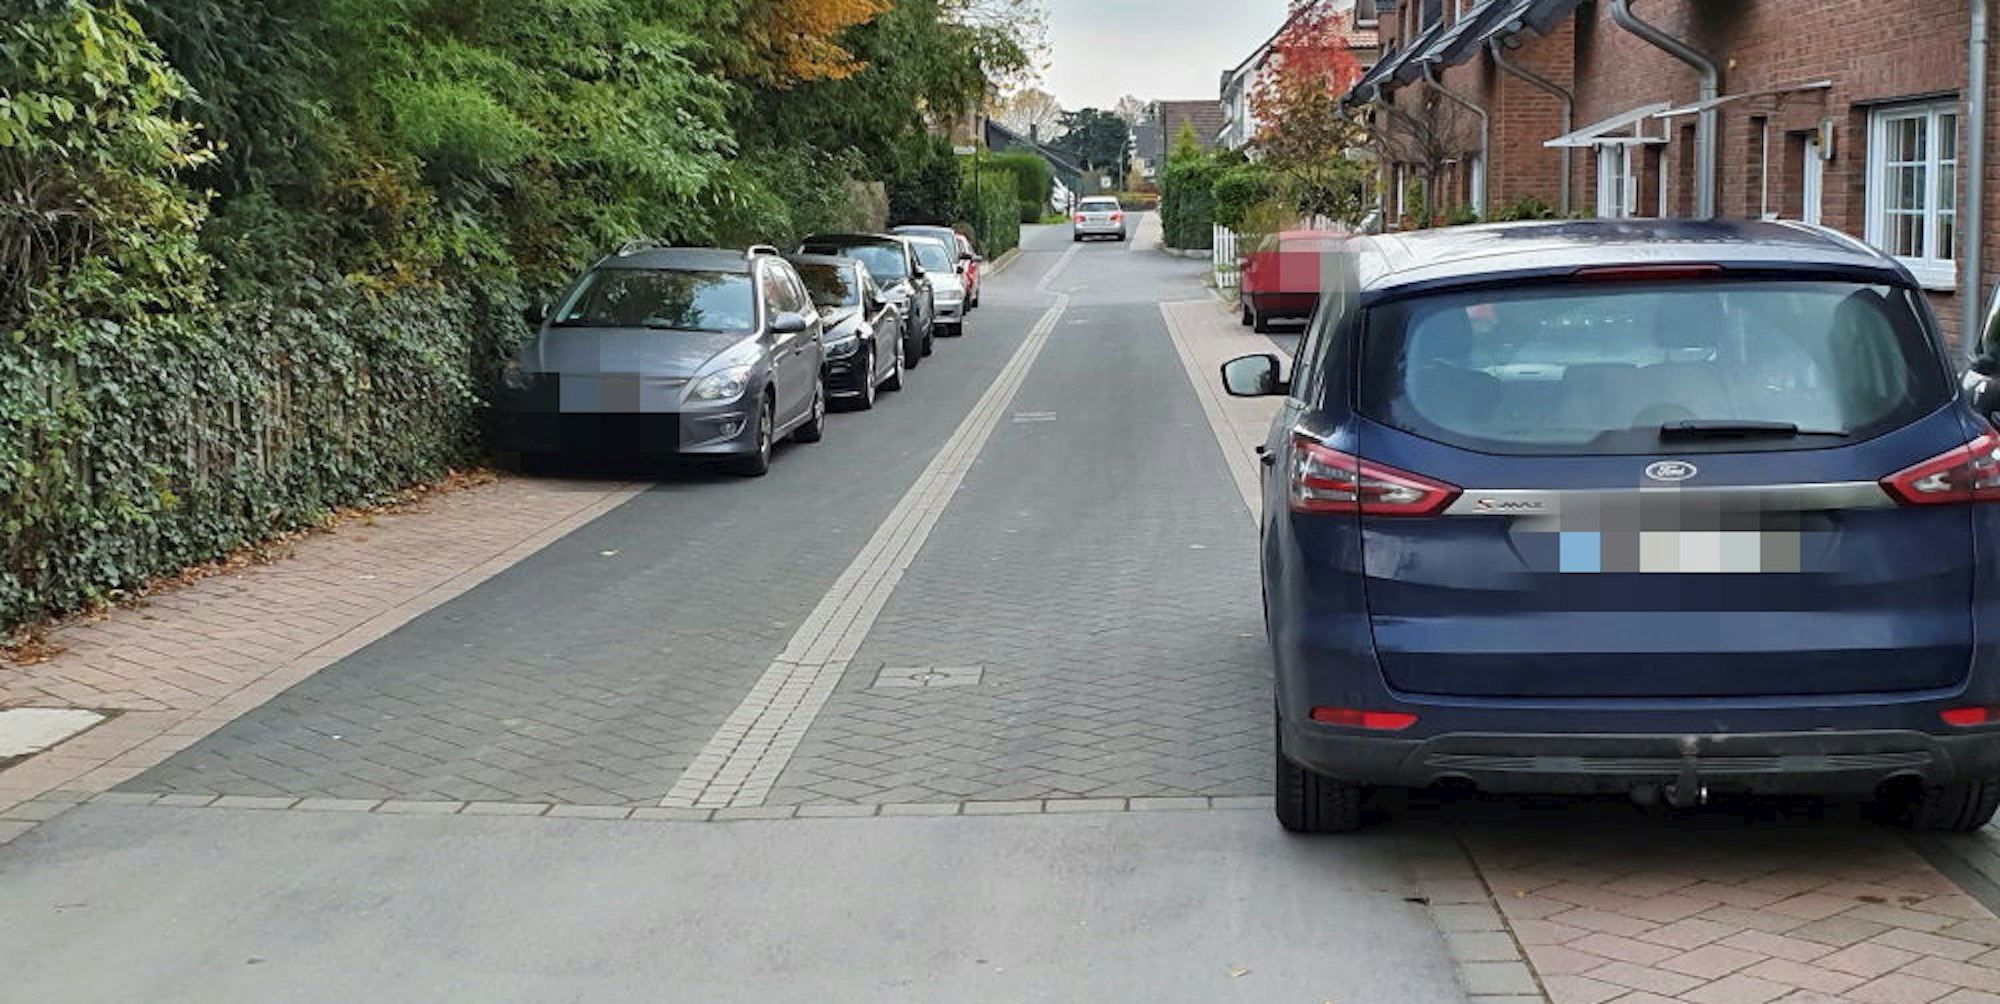 Weil Parkraum auf den Niederkasseler Straßen nicht zuletzt wegen der regen Bautätigkeit immer knapper wird, soll der Rat im Dezember erstmals eine Stellplatzsatzung für die Stadt beschließen.